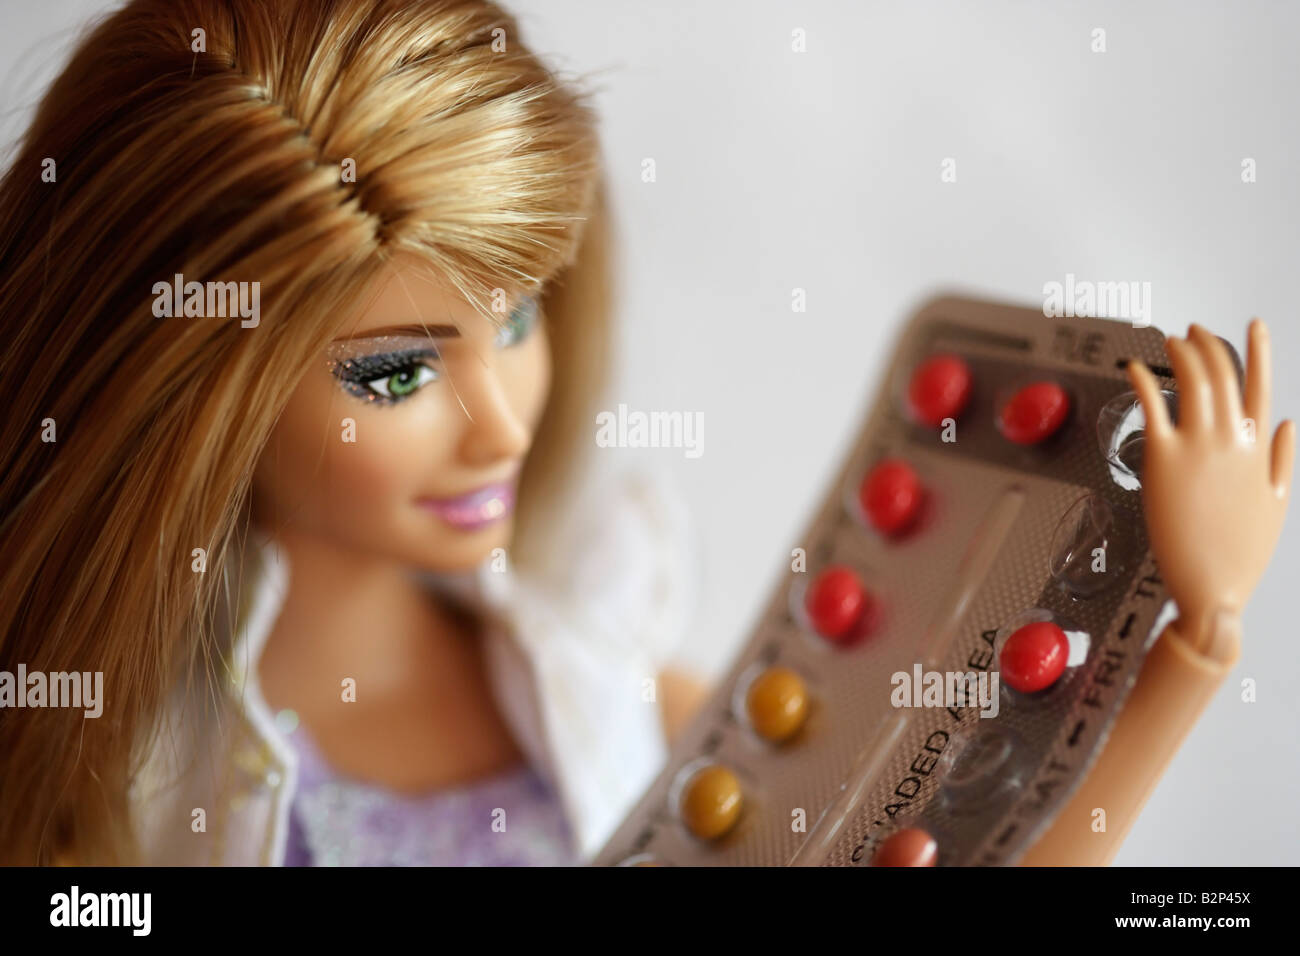 Poupée Barbie de série. Barbie prend la pilule contraceptive et rate un jour Banque D'Images